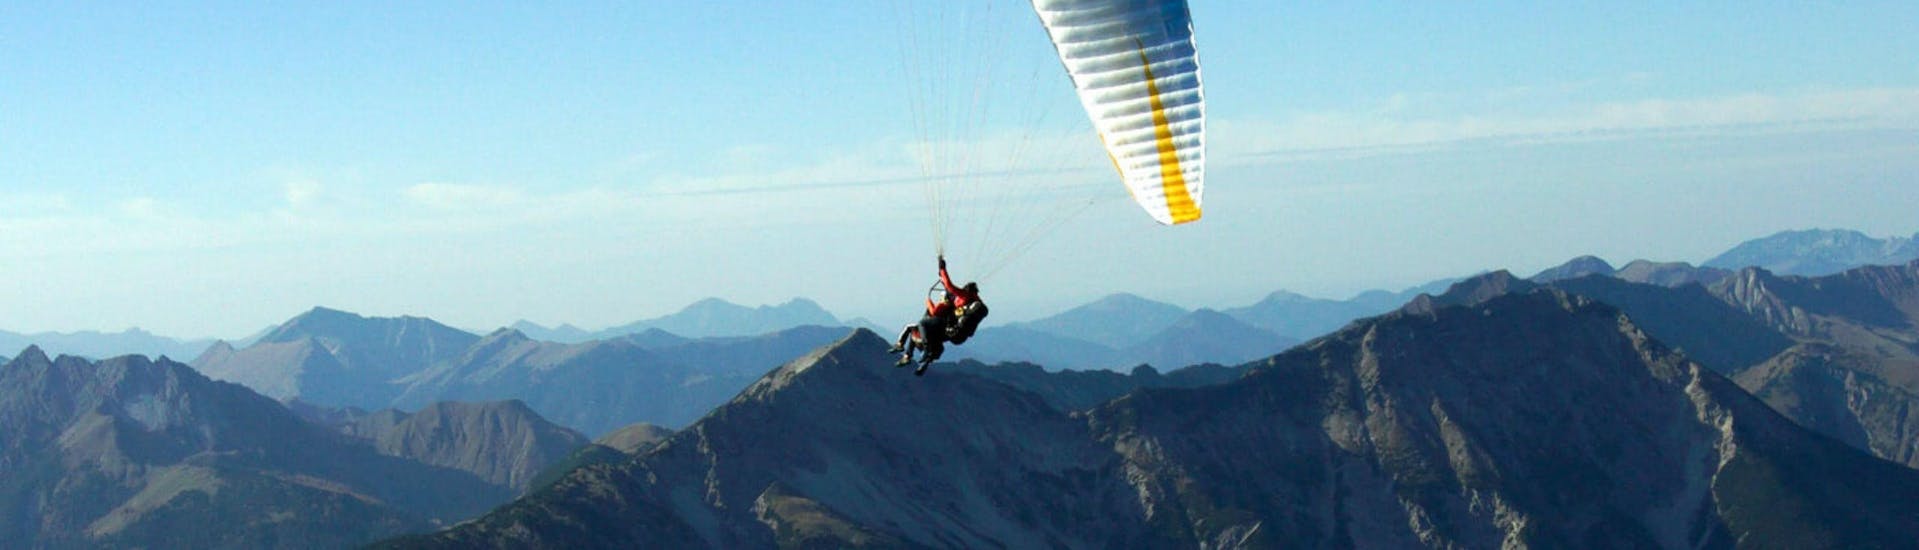 Thermisch tandem paragliding - Rofangebirge.